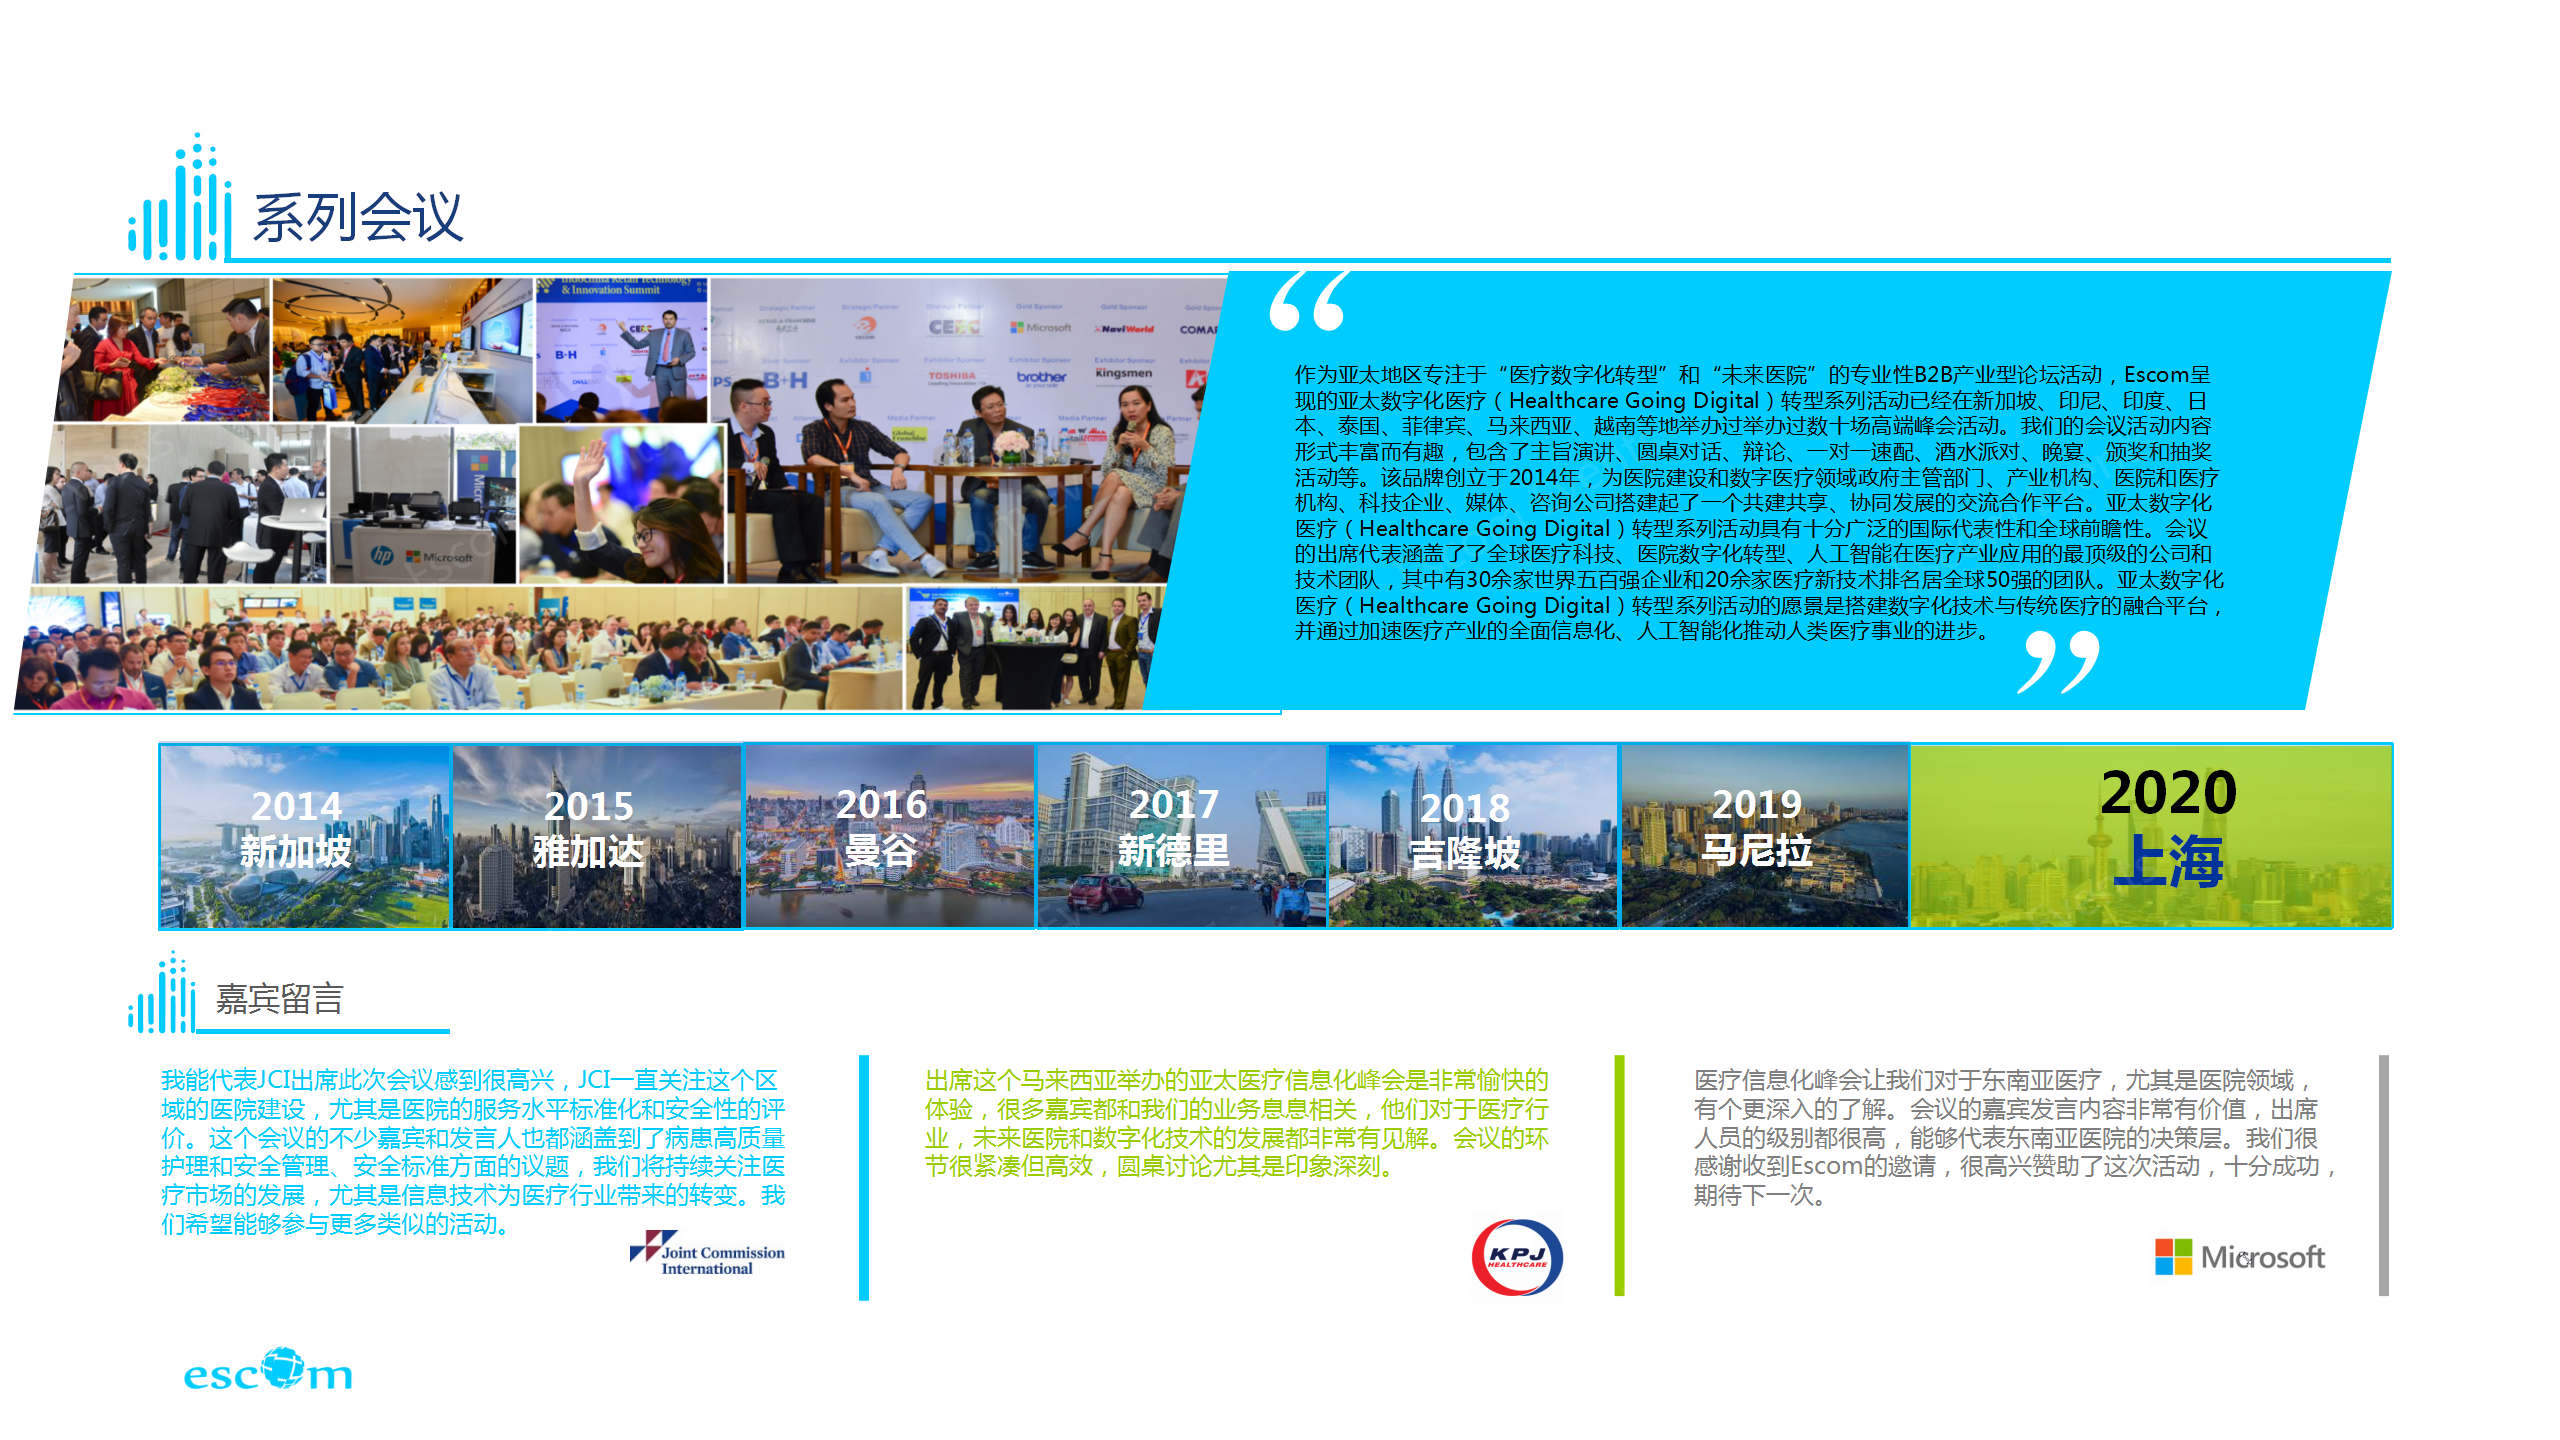 第十届亚太医疗数字化创新峰会-上海站 2020